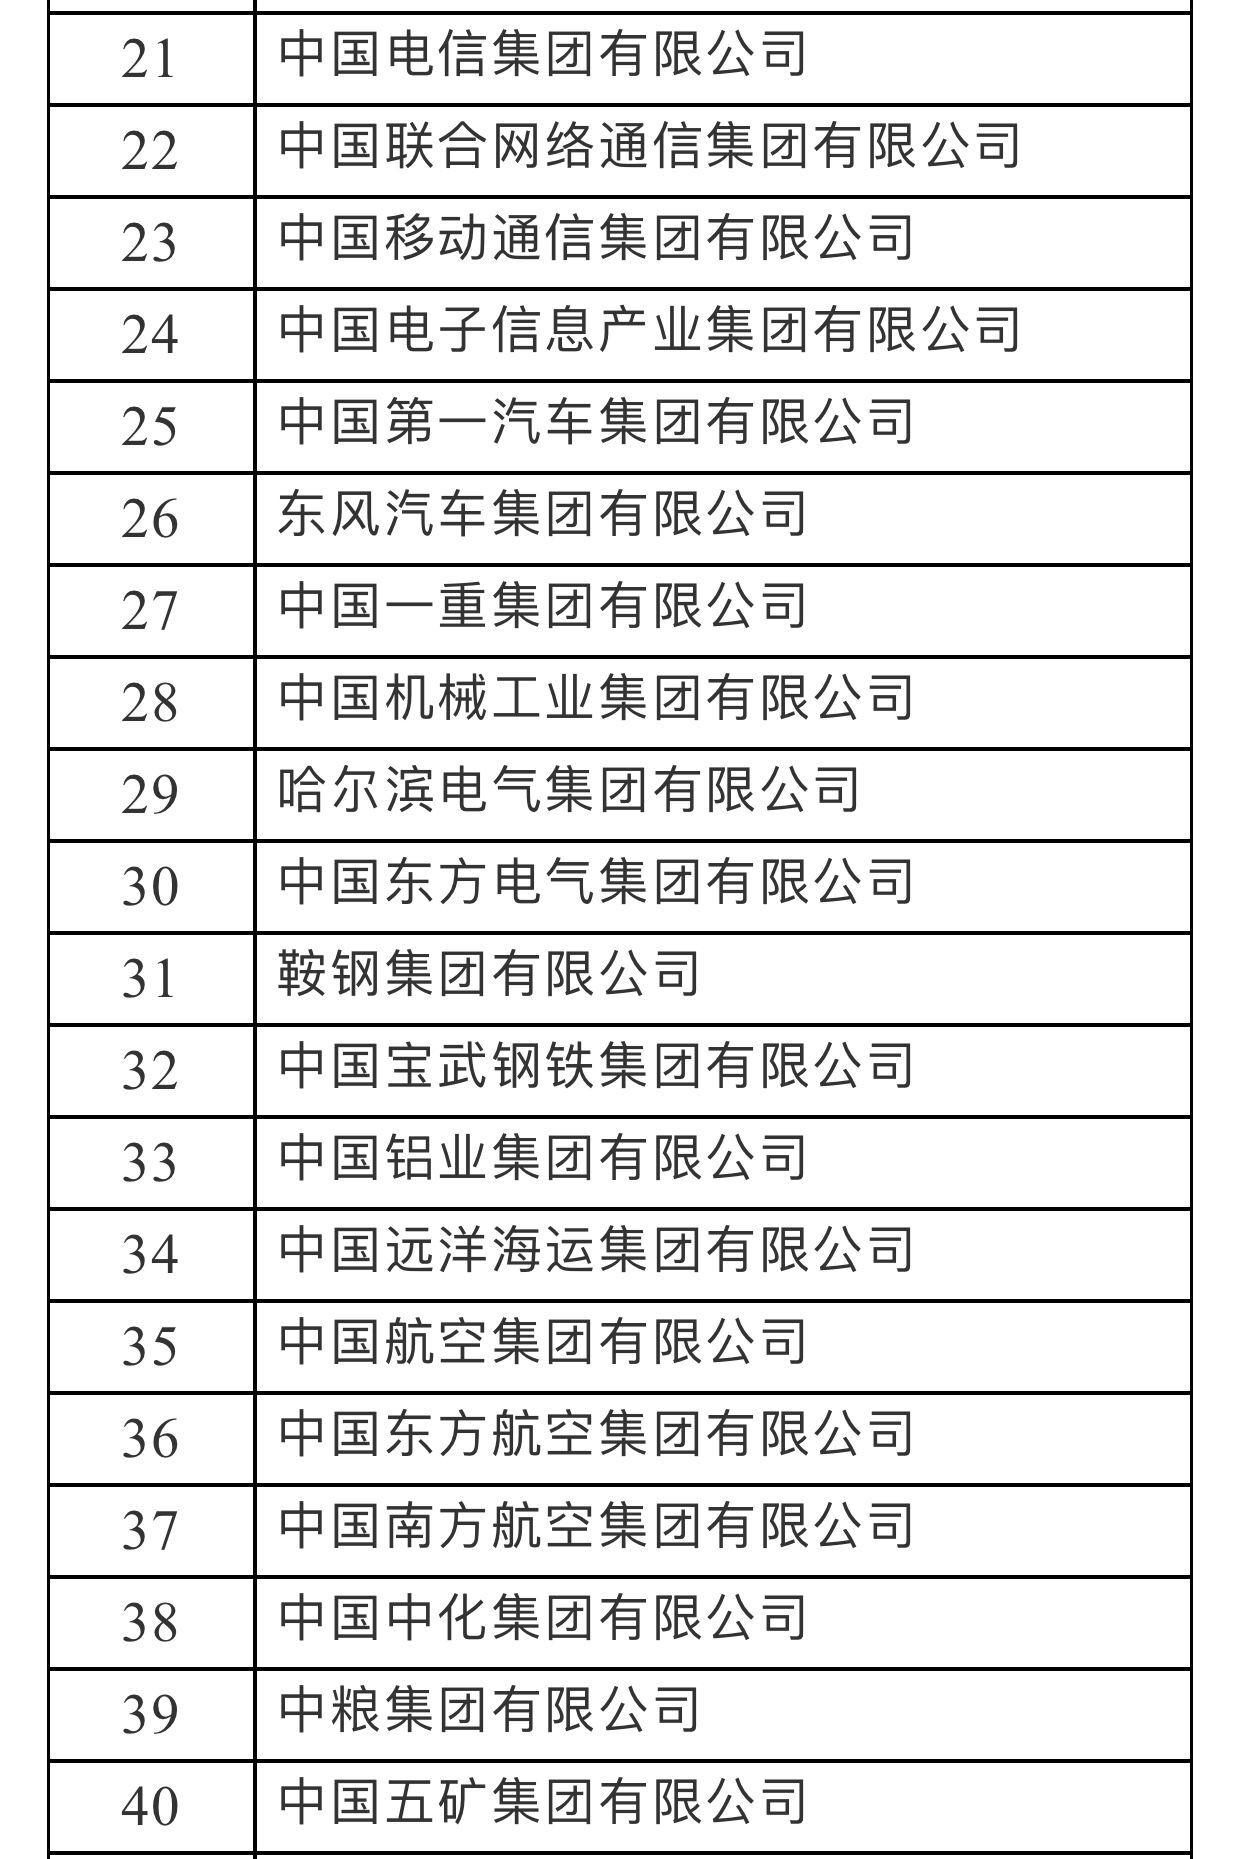 国务院国资委发布最新央企名录:共95家,全部完整名单!